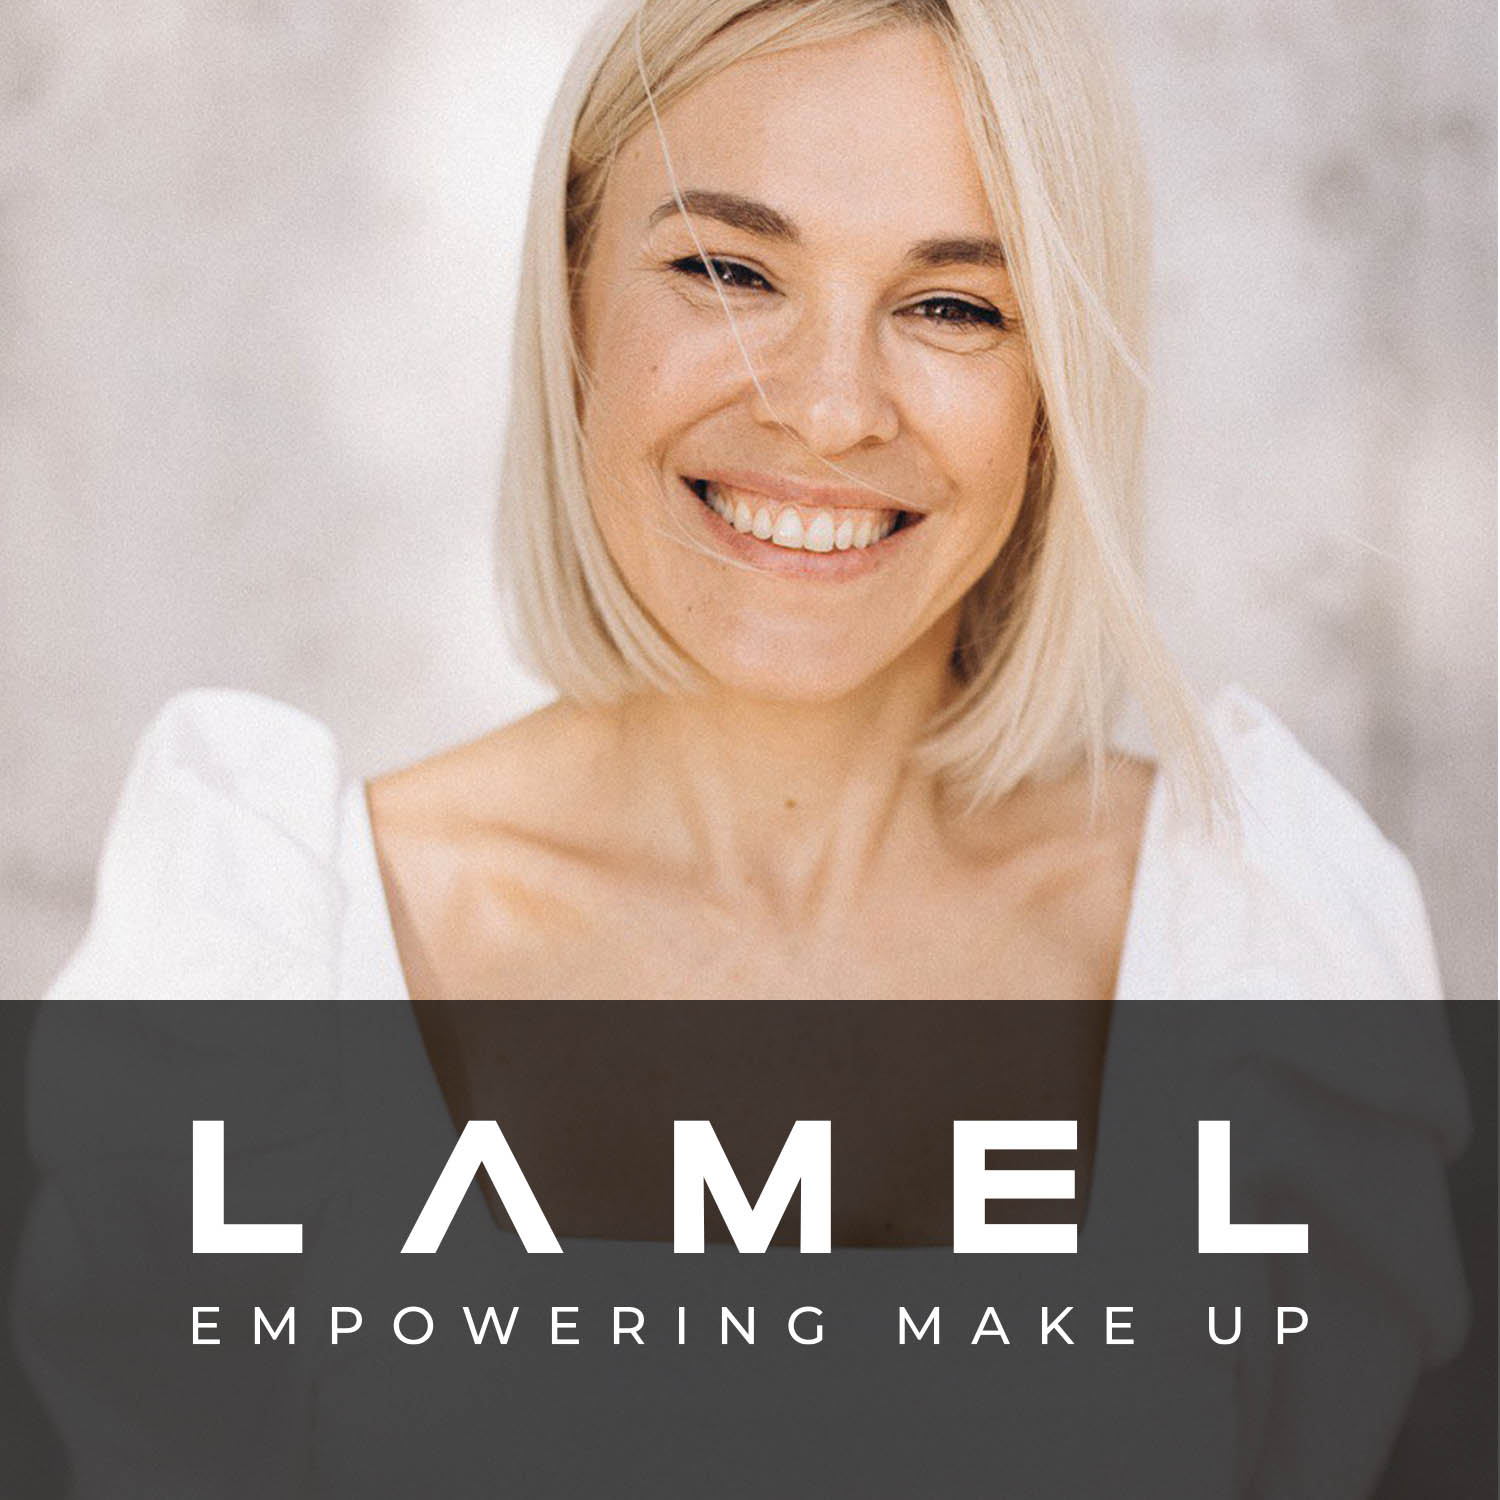 Lamel Empowering Make Up